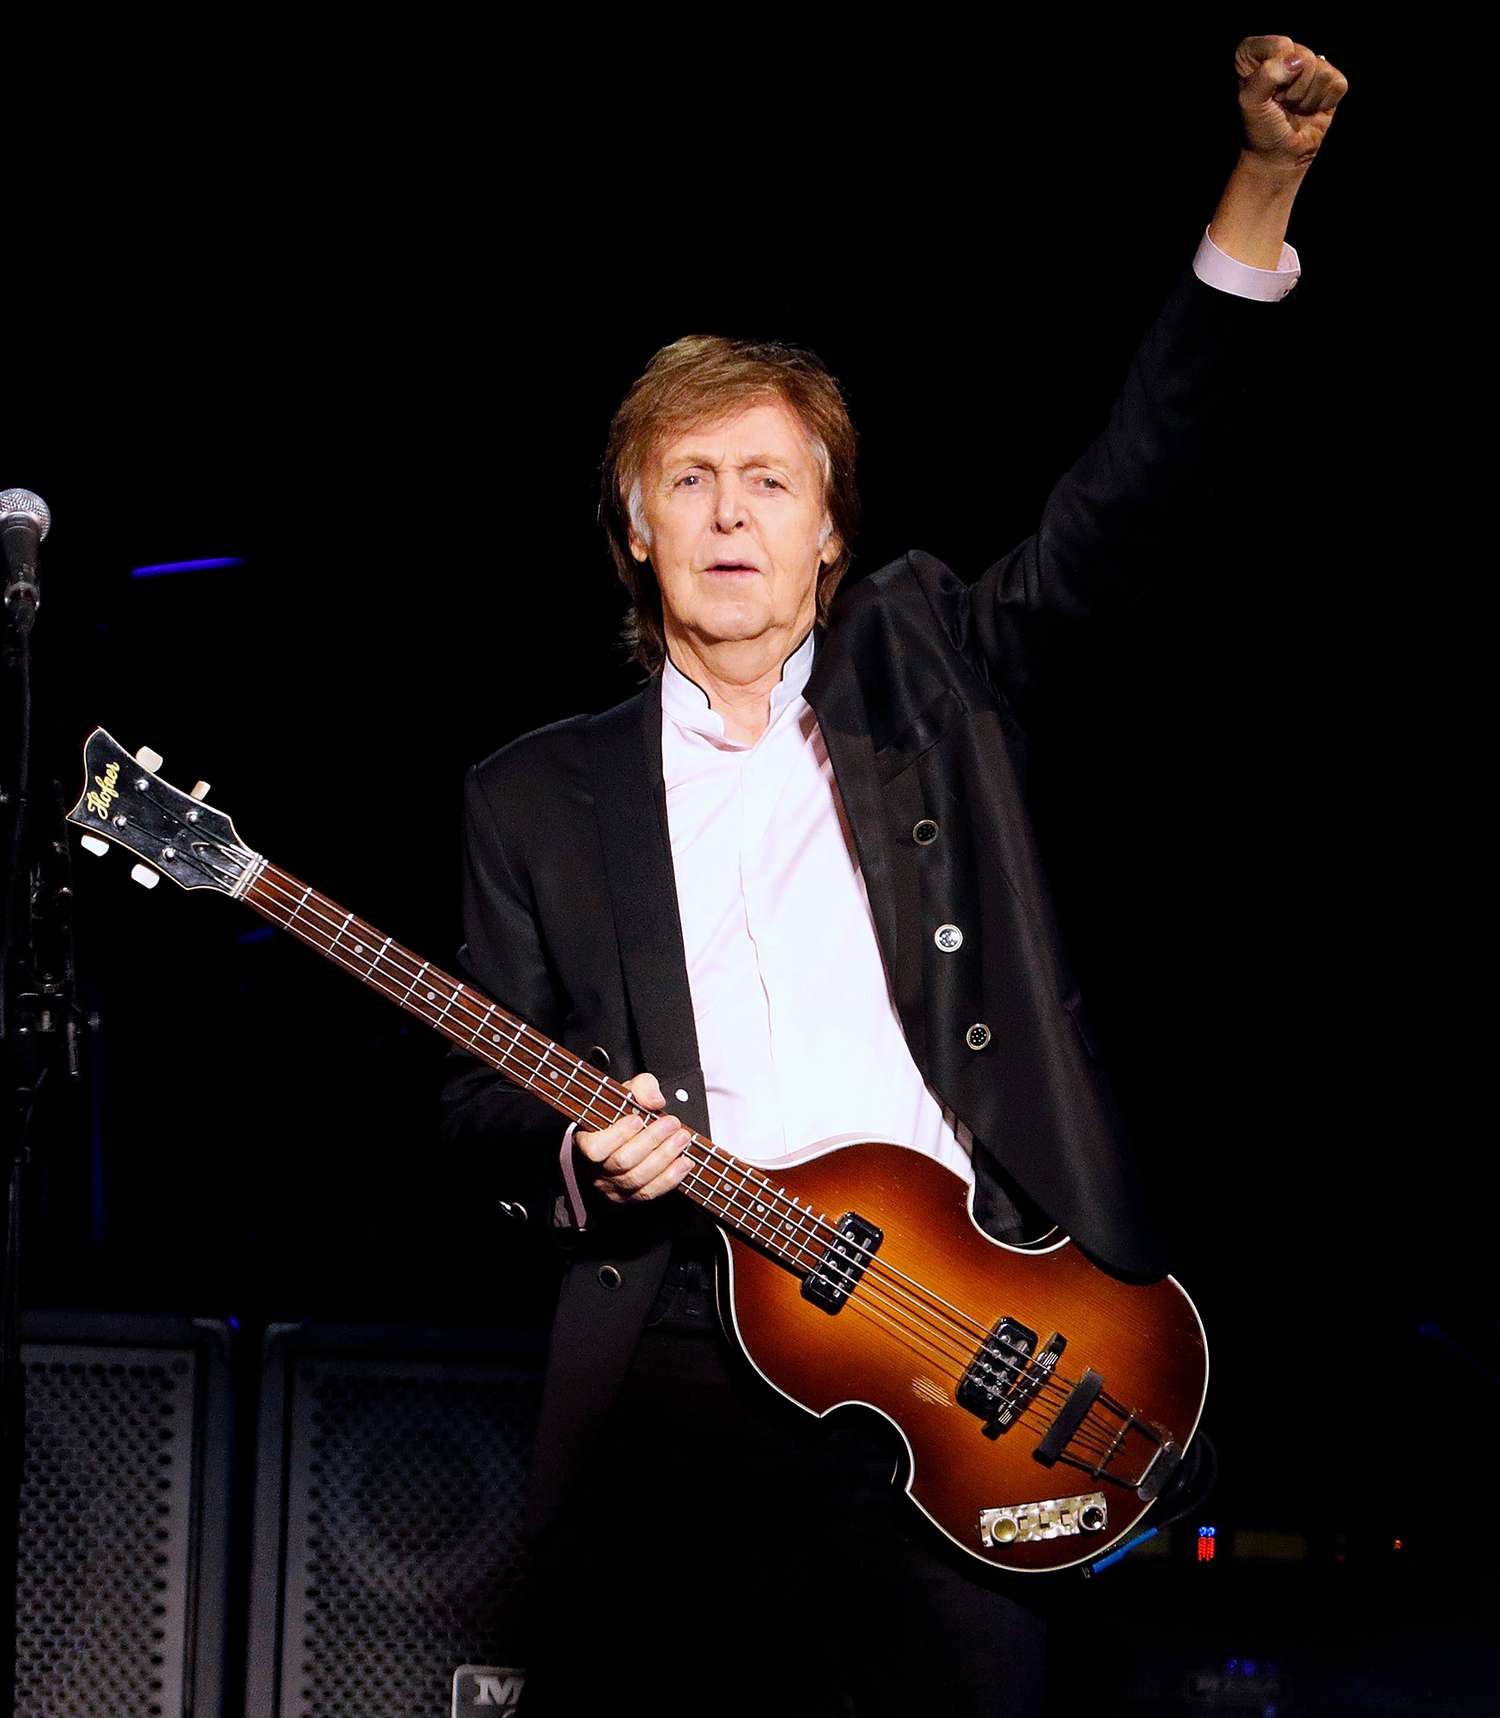 Paul McCartney In Concert - New York City